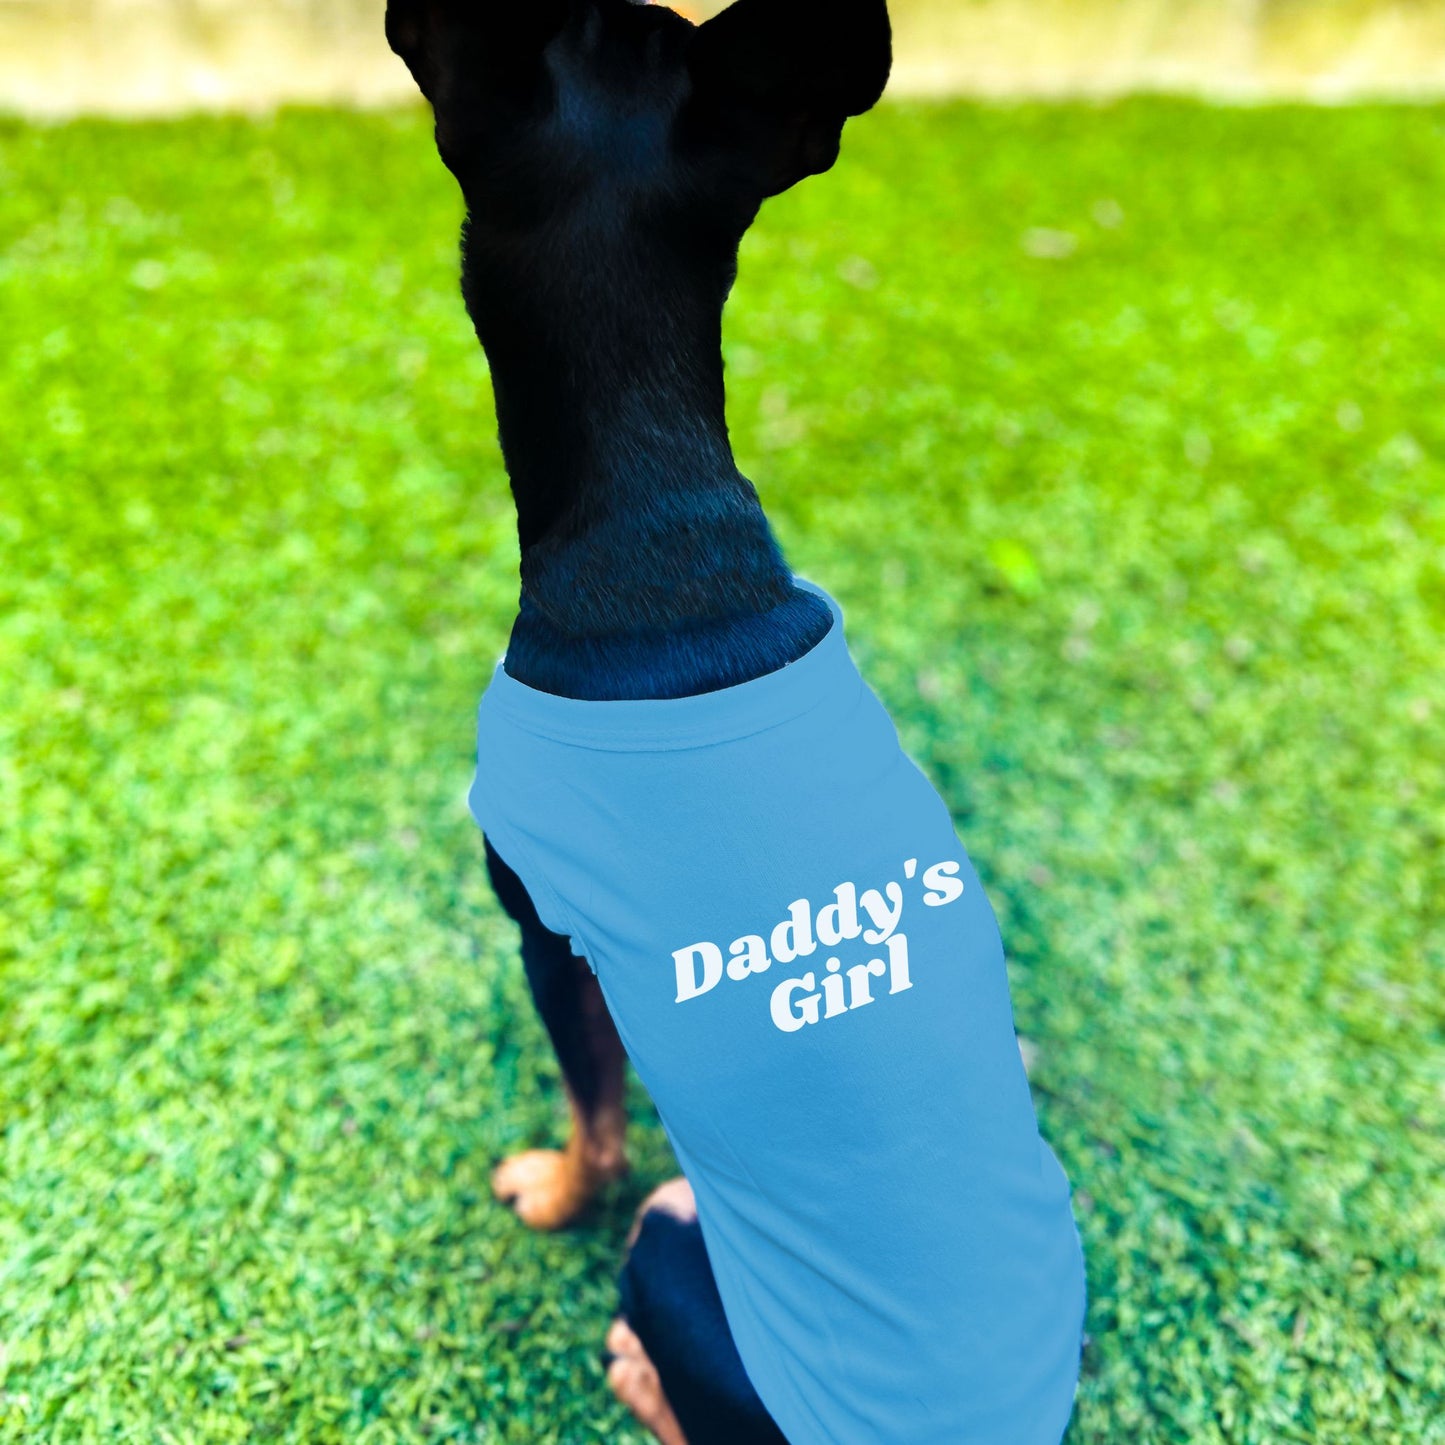 "Daddy's Girl" Dog Shirt